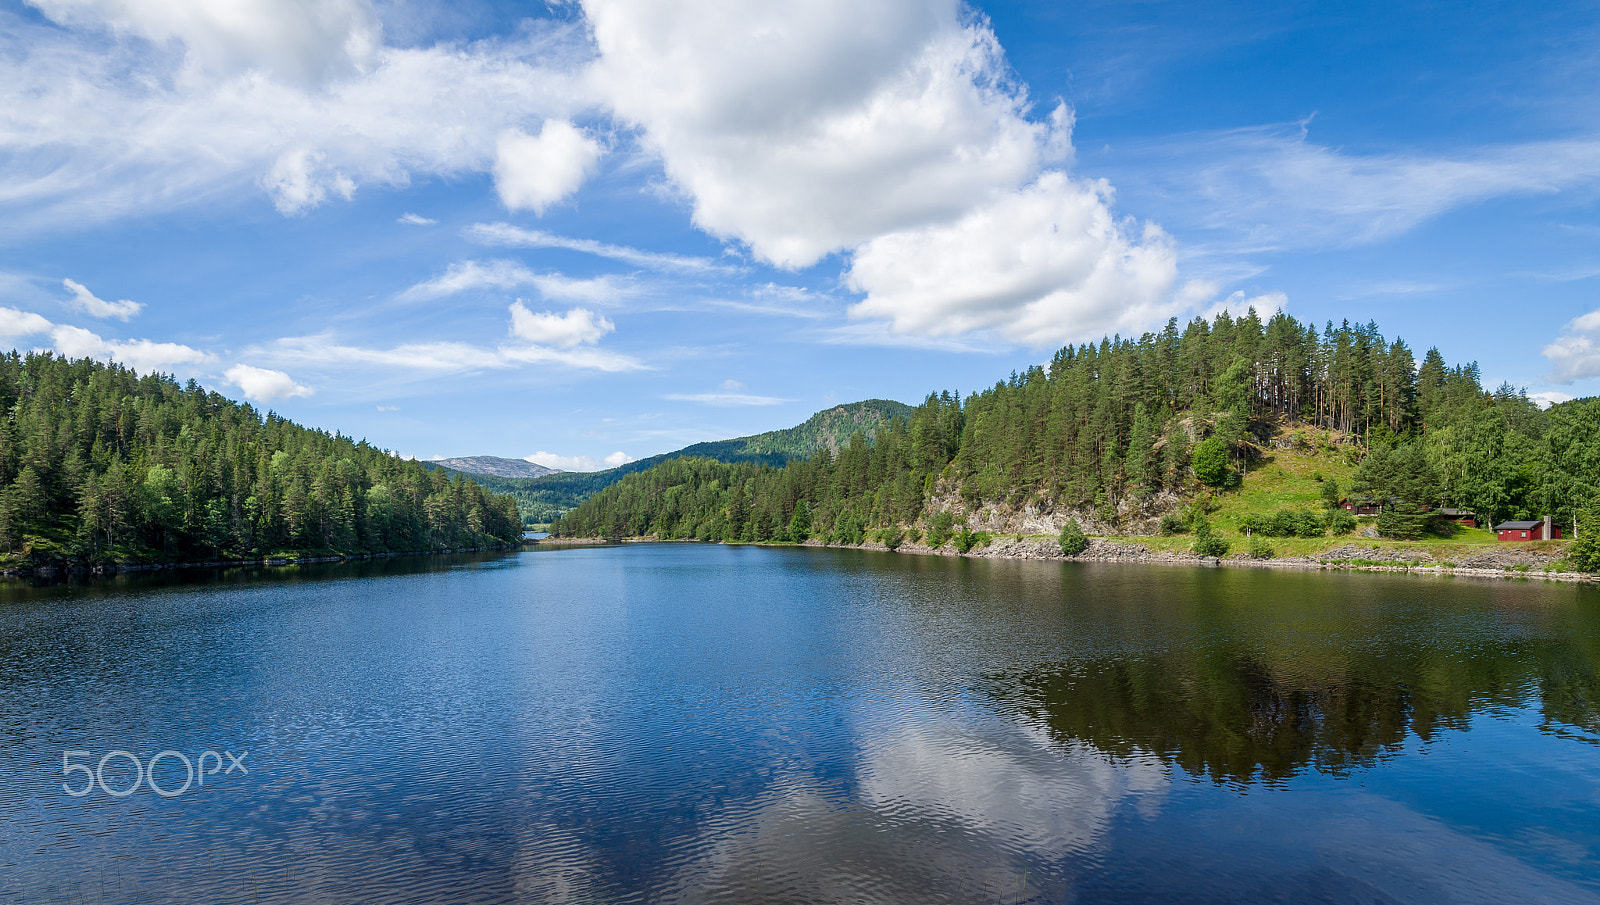 Nikon D3S + Nikon AF-S Nikkor 16-35mm F4G ED VR sample photo. Typical lake landscape of norwegian nature photography